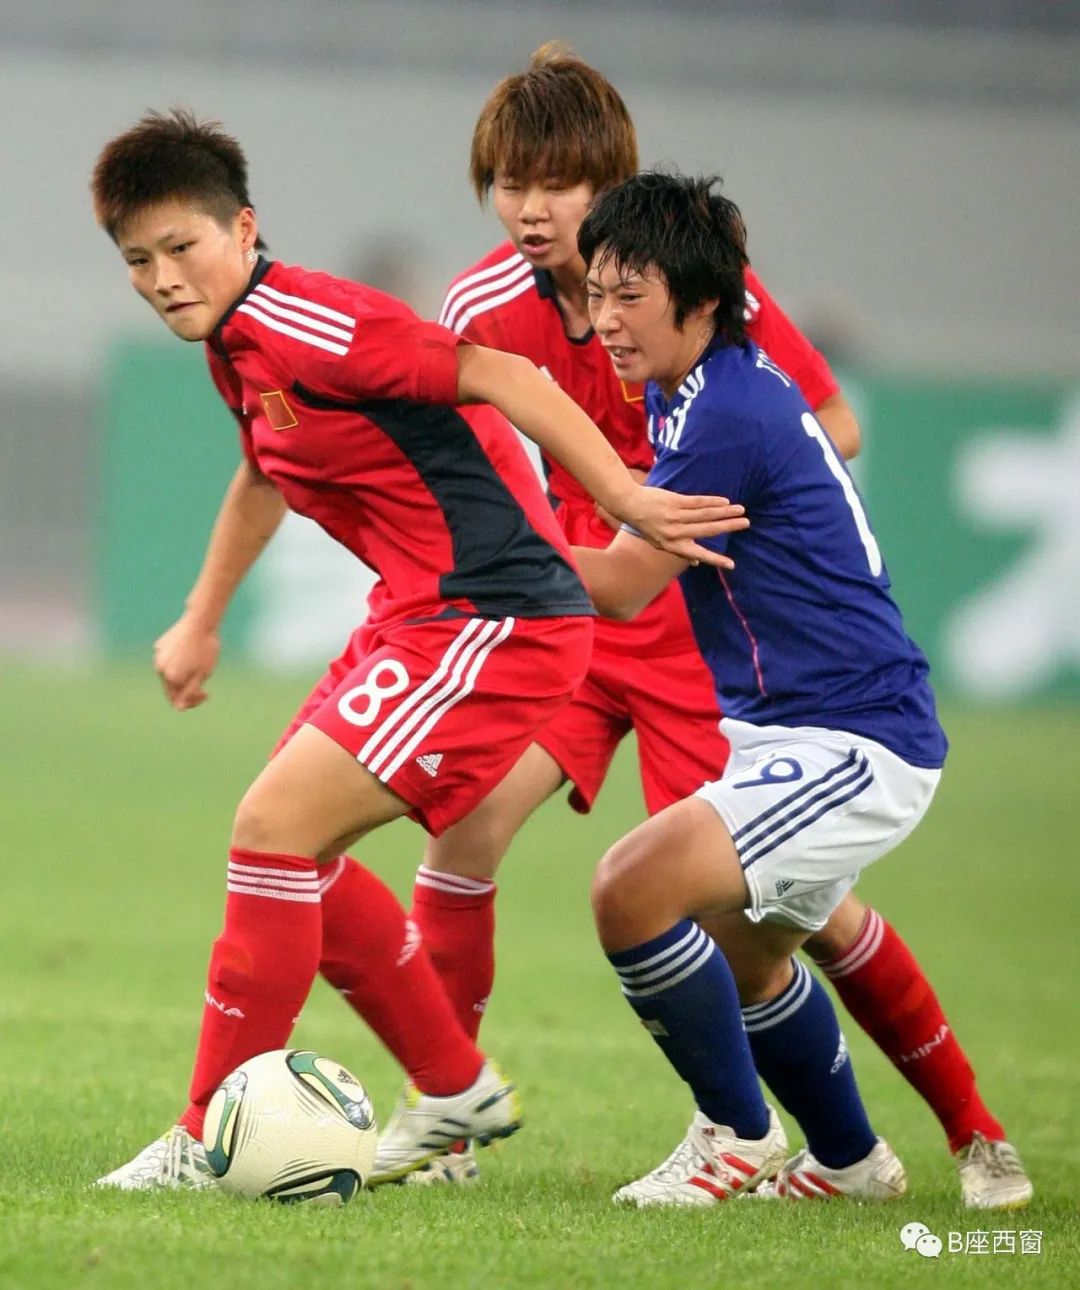 马君2009年第一次加入中国女足国家队,那时候刚刚20岁.